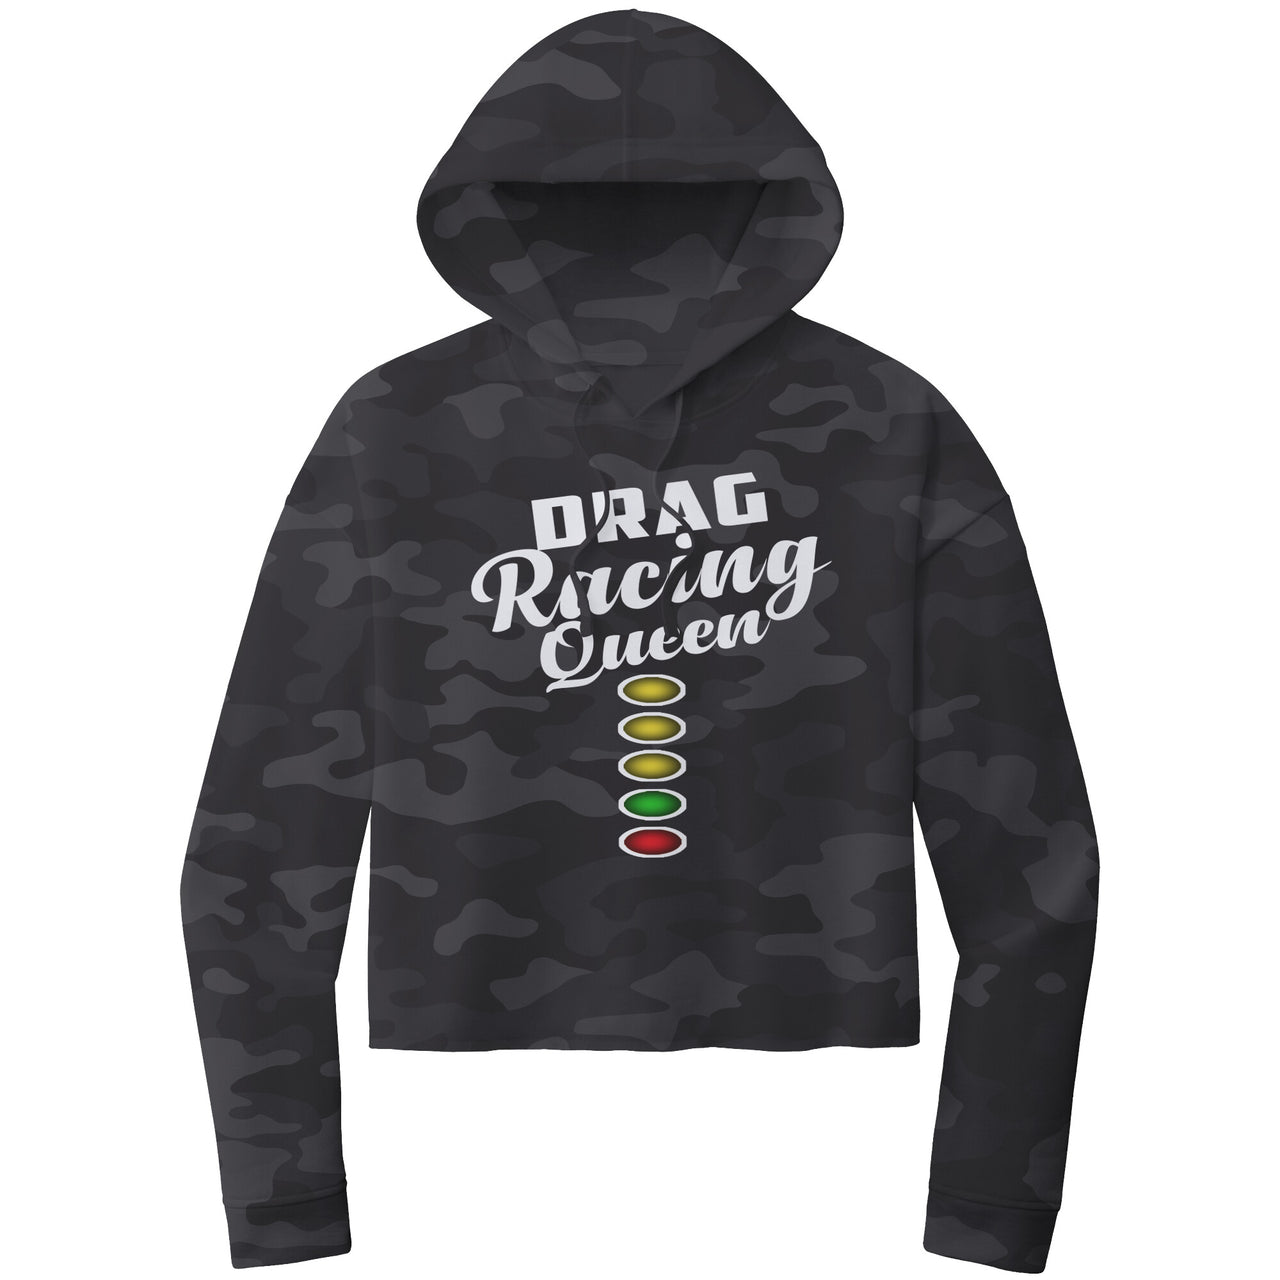 Drag Racing Queen Crop Top hoodie